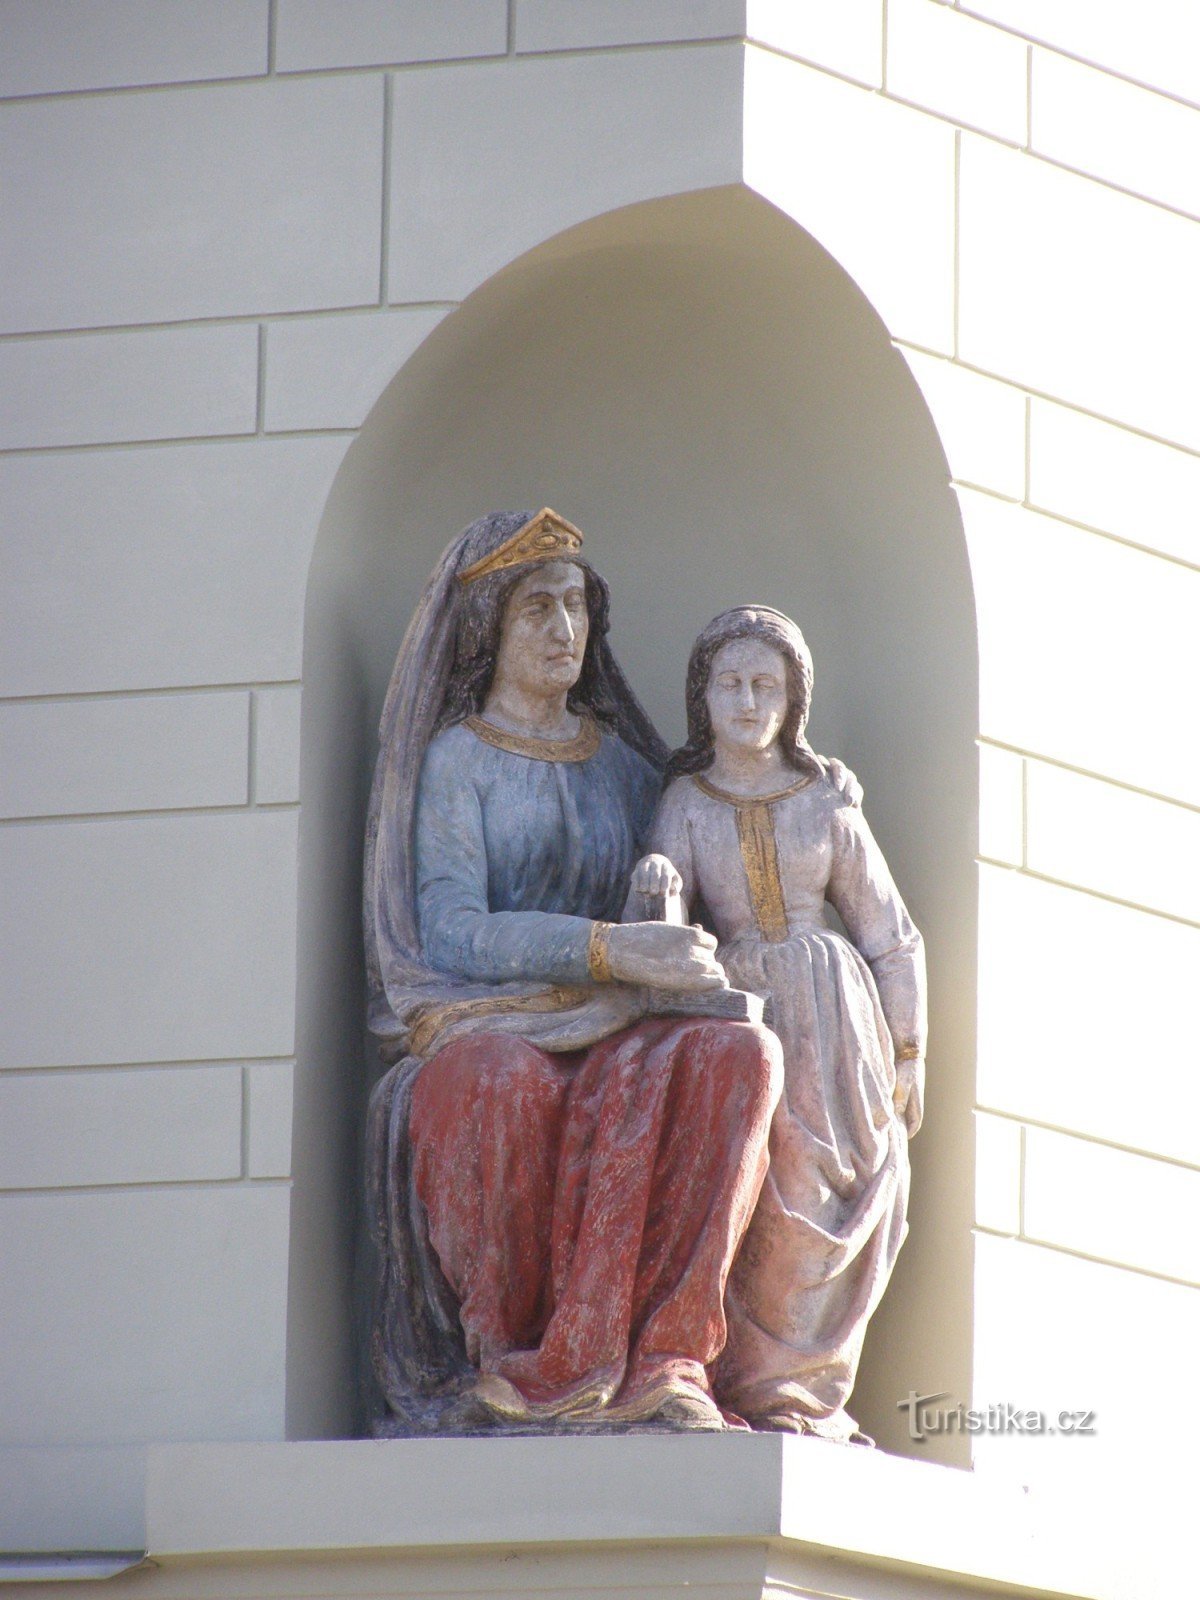 Týnec nad Labem - borgarens hus nr 158 med statyn av St. Anne undervisar Jungfru Maria